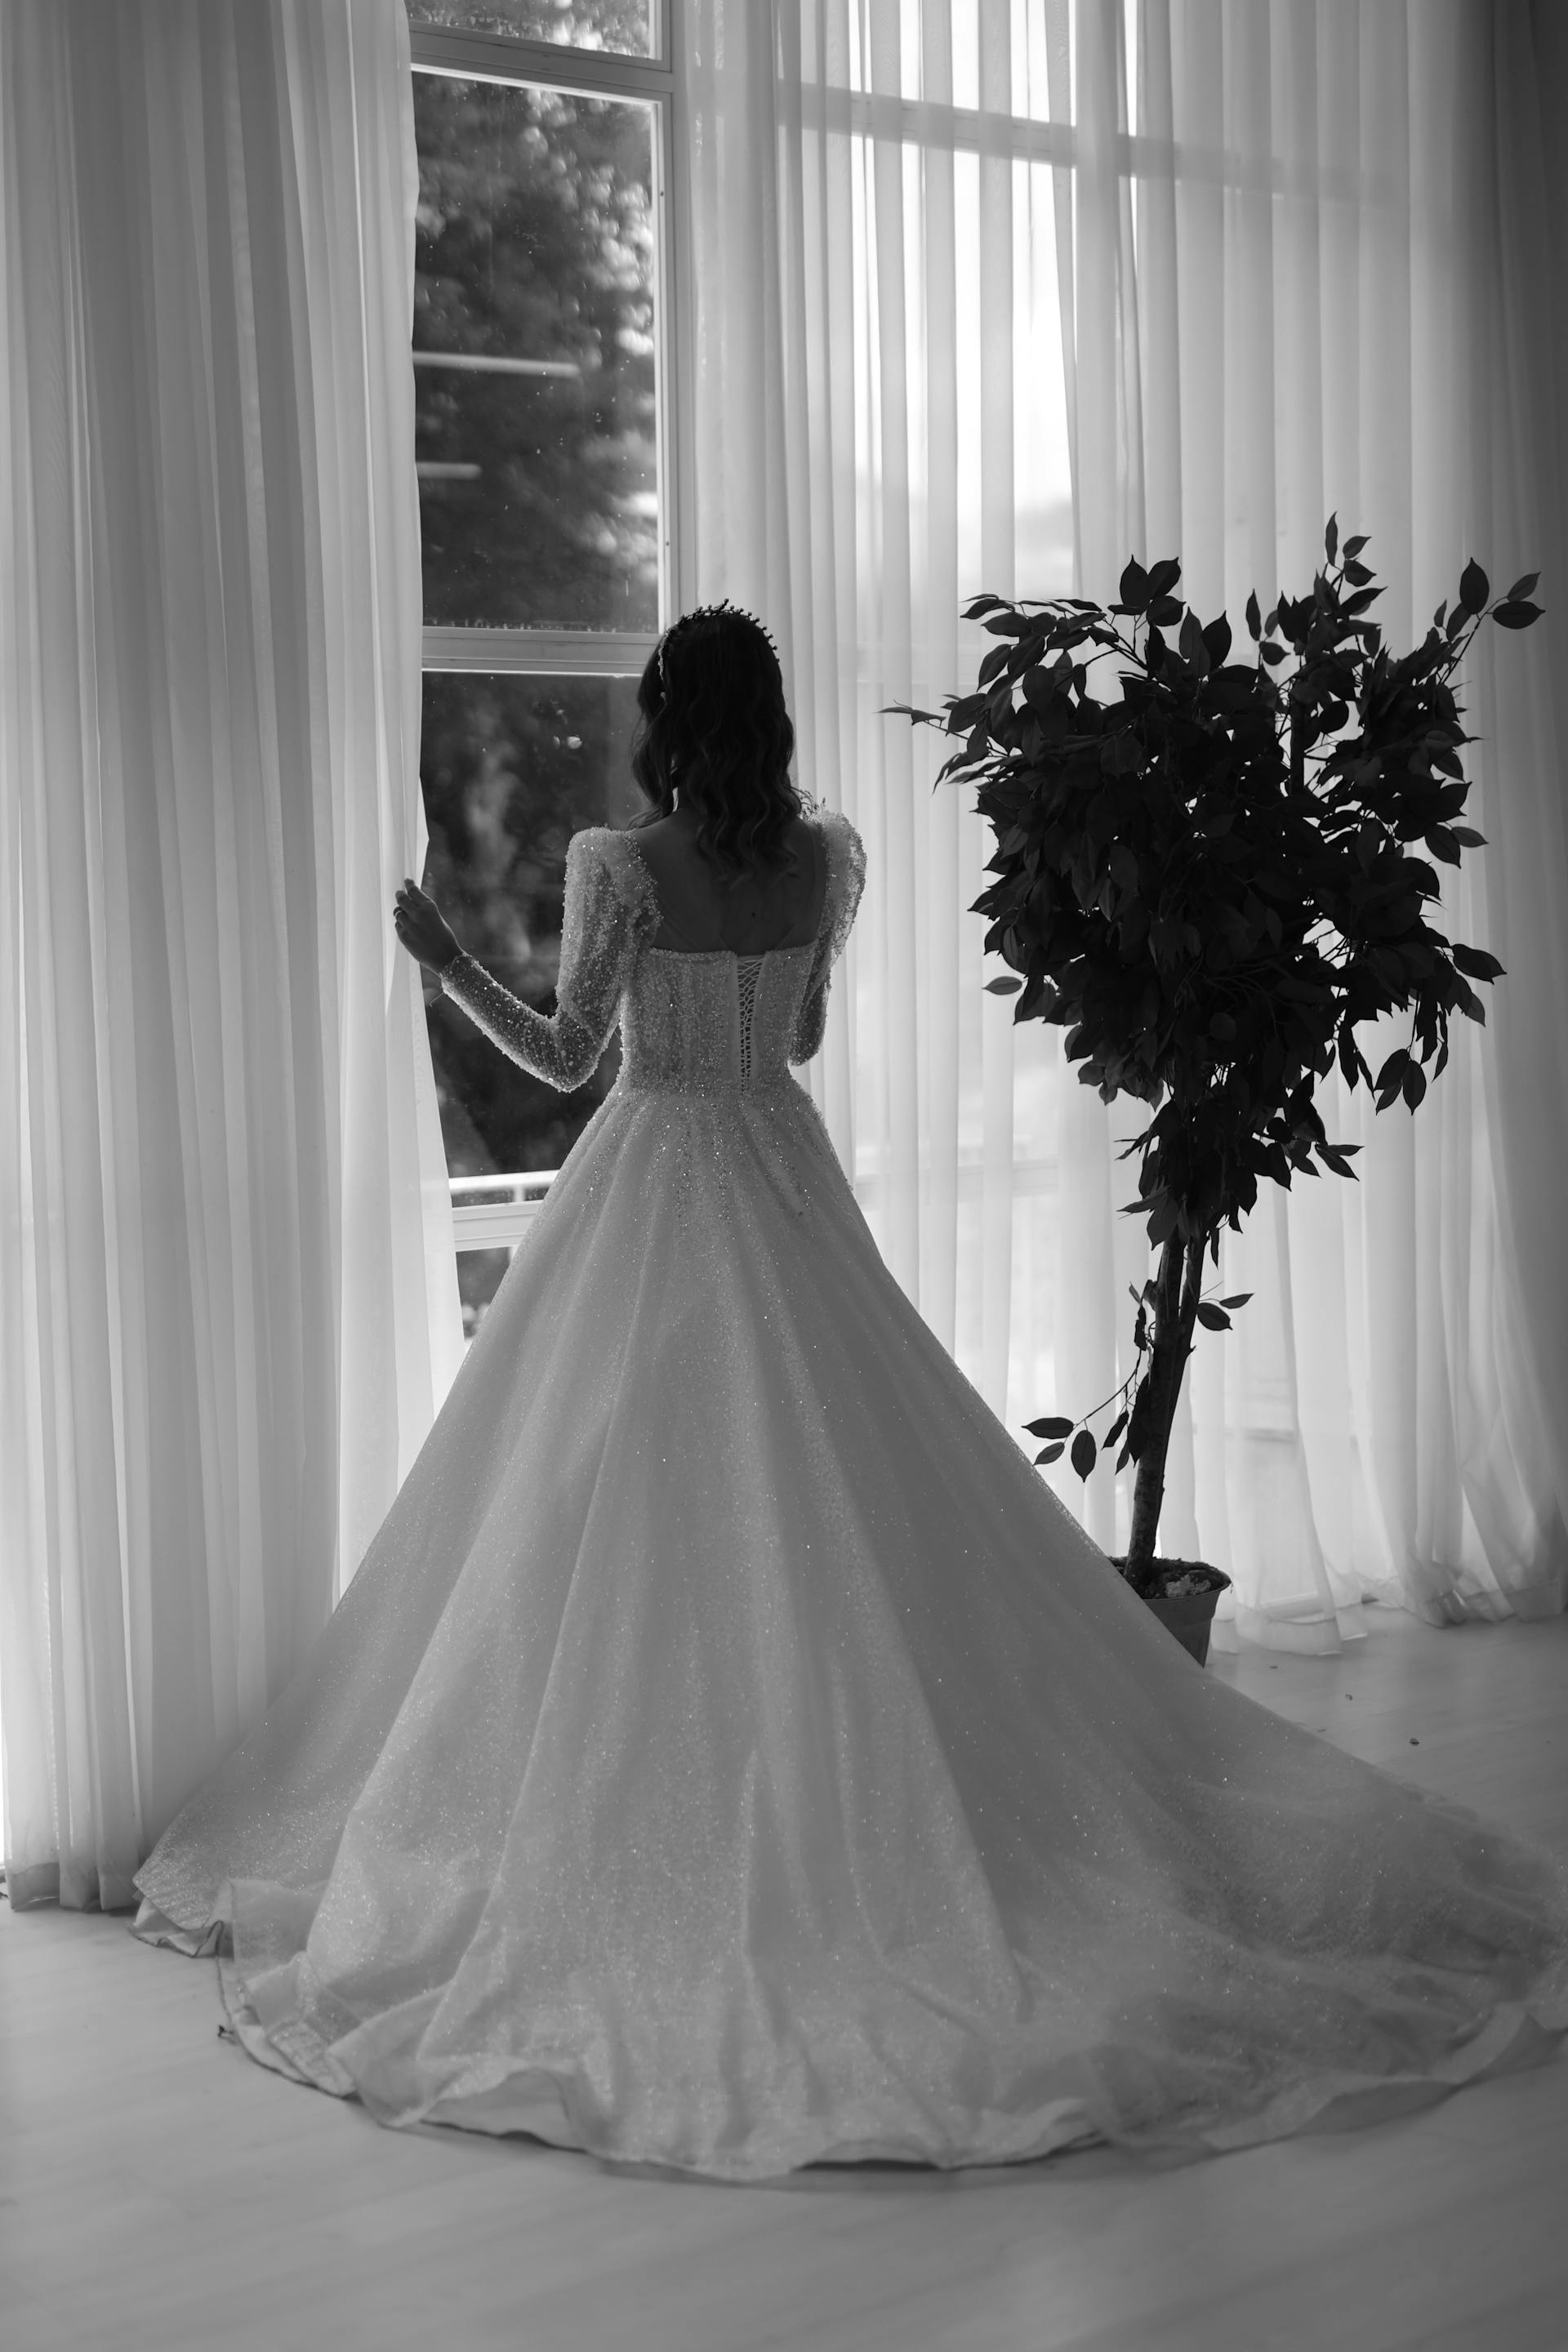 Une mariée dans une cabine d'essayage | Source : Pexels